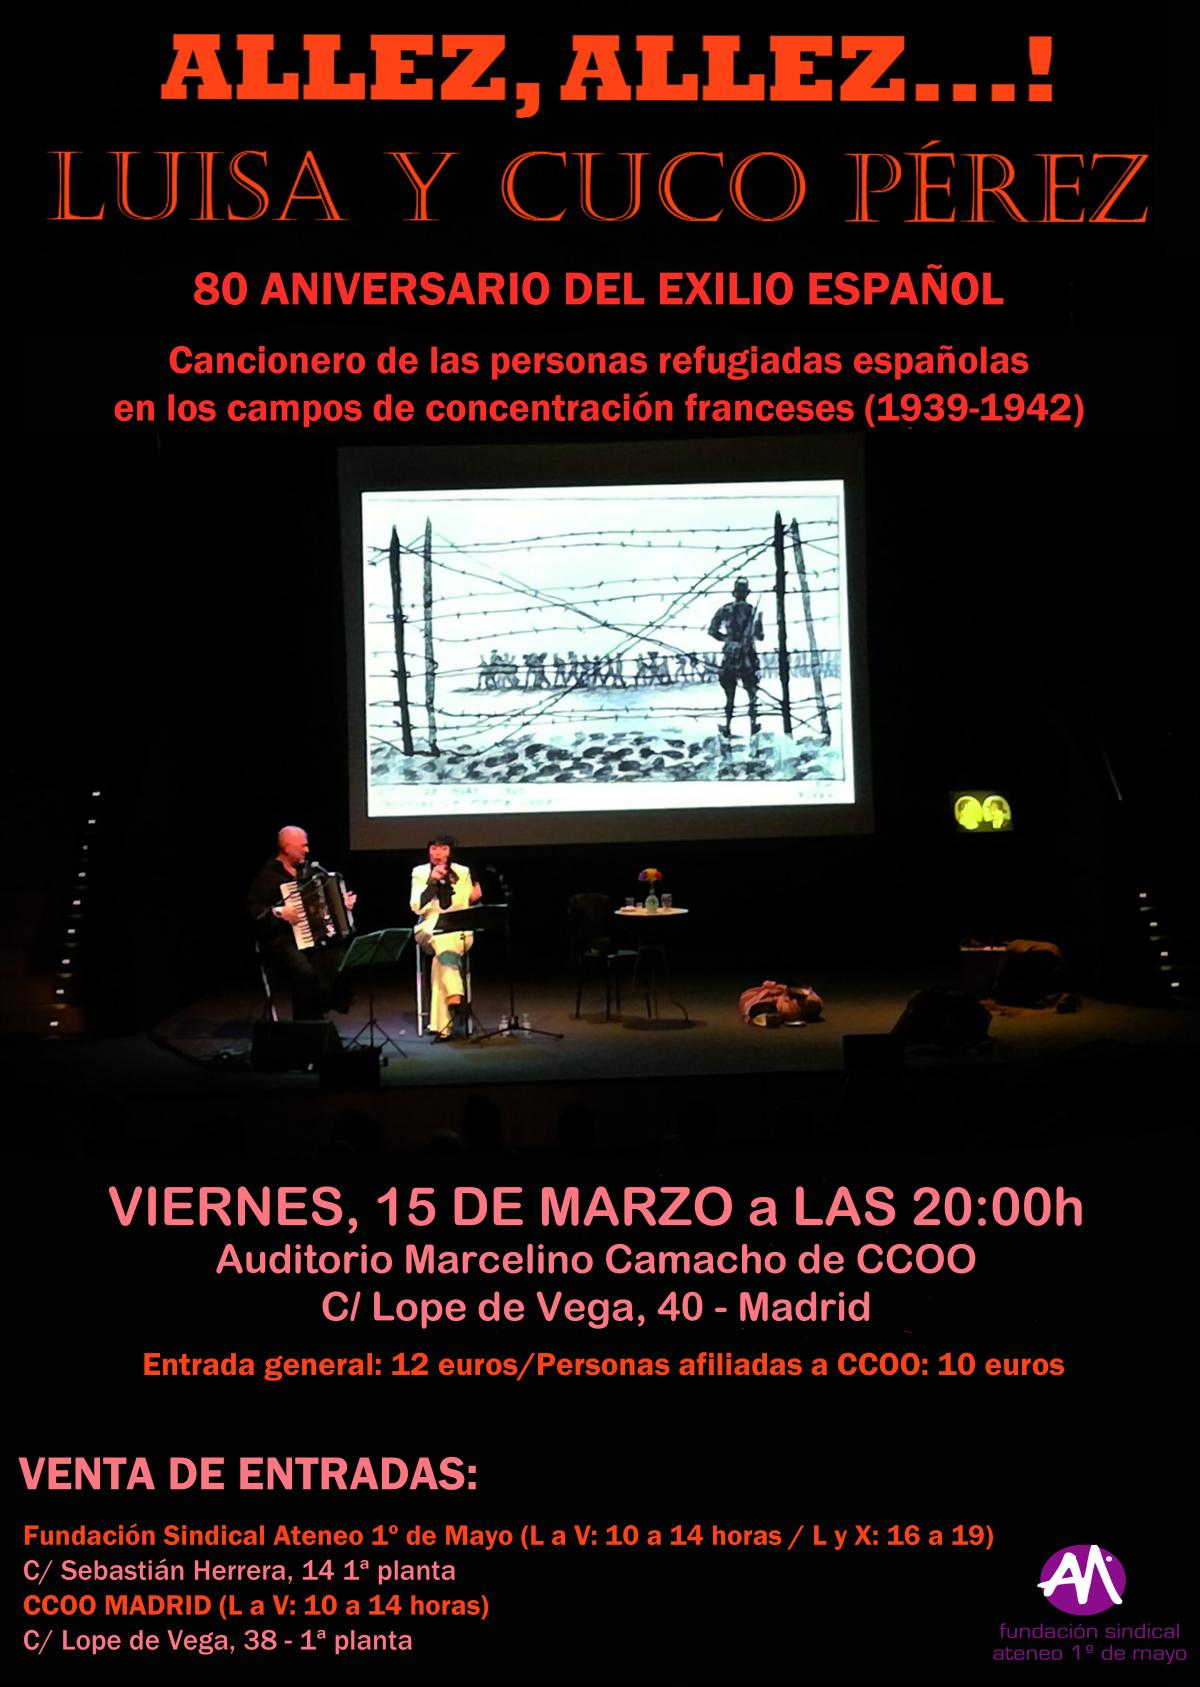 Allez, Allez! Luisa y Cuco Pérez en concierto. 80 Aniversario del exilio español